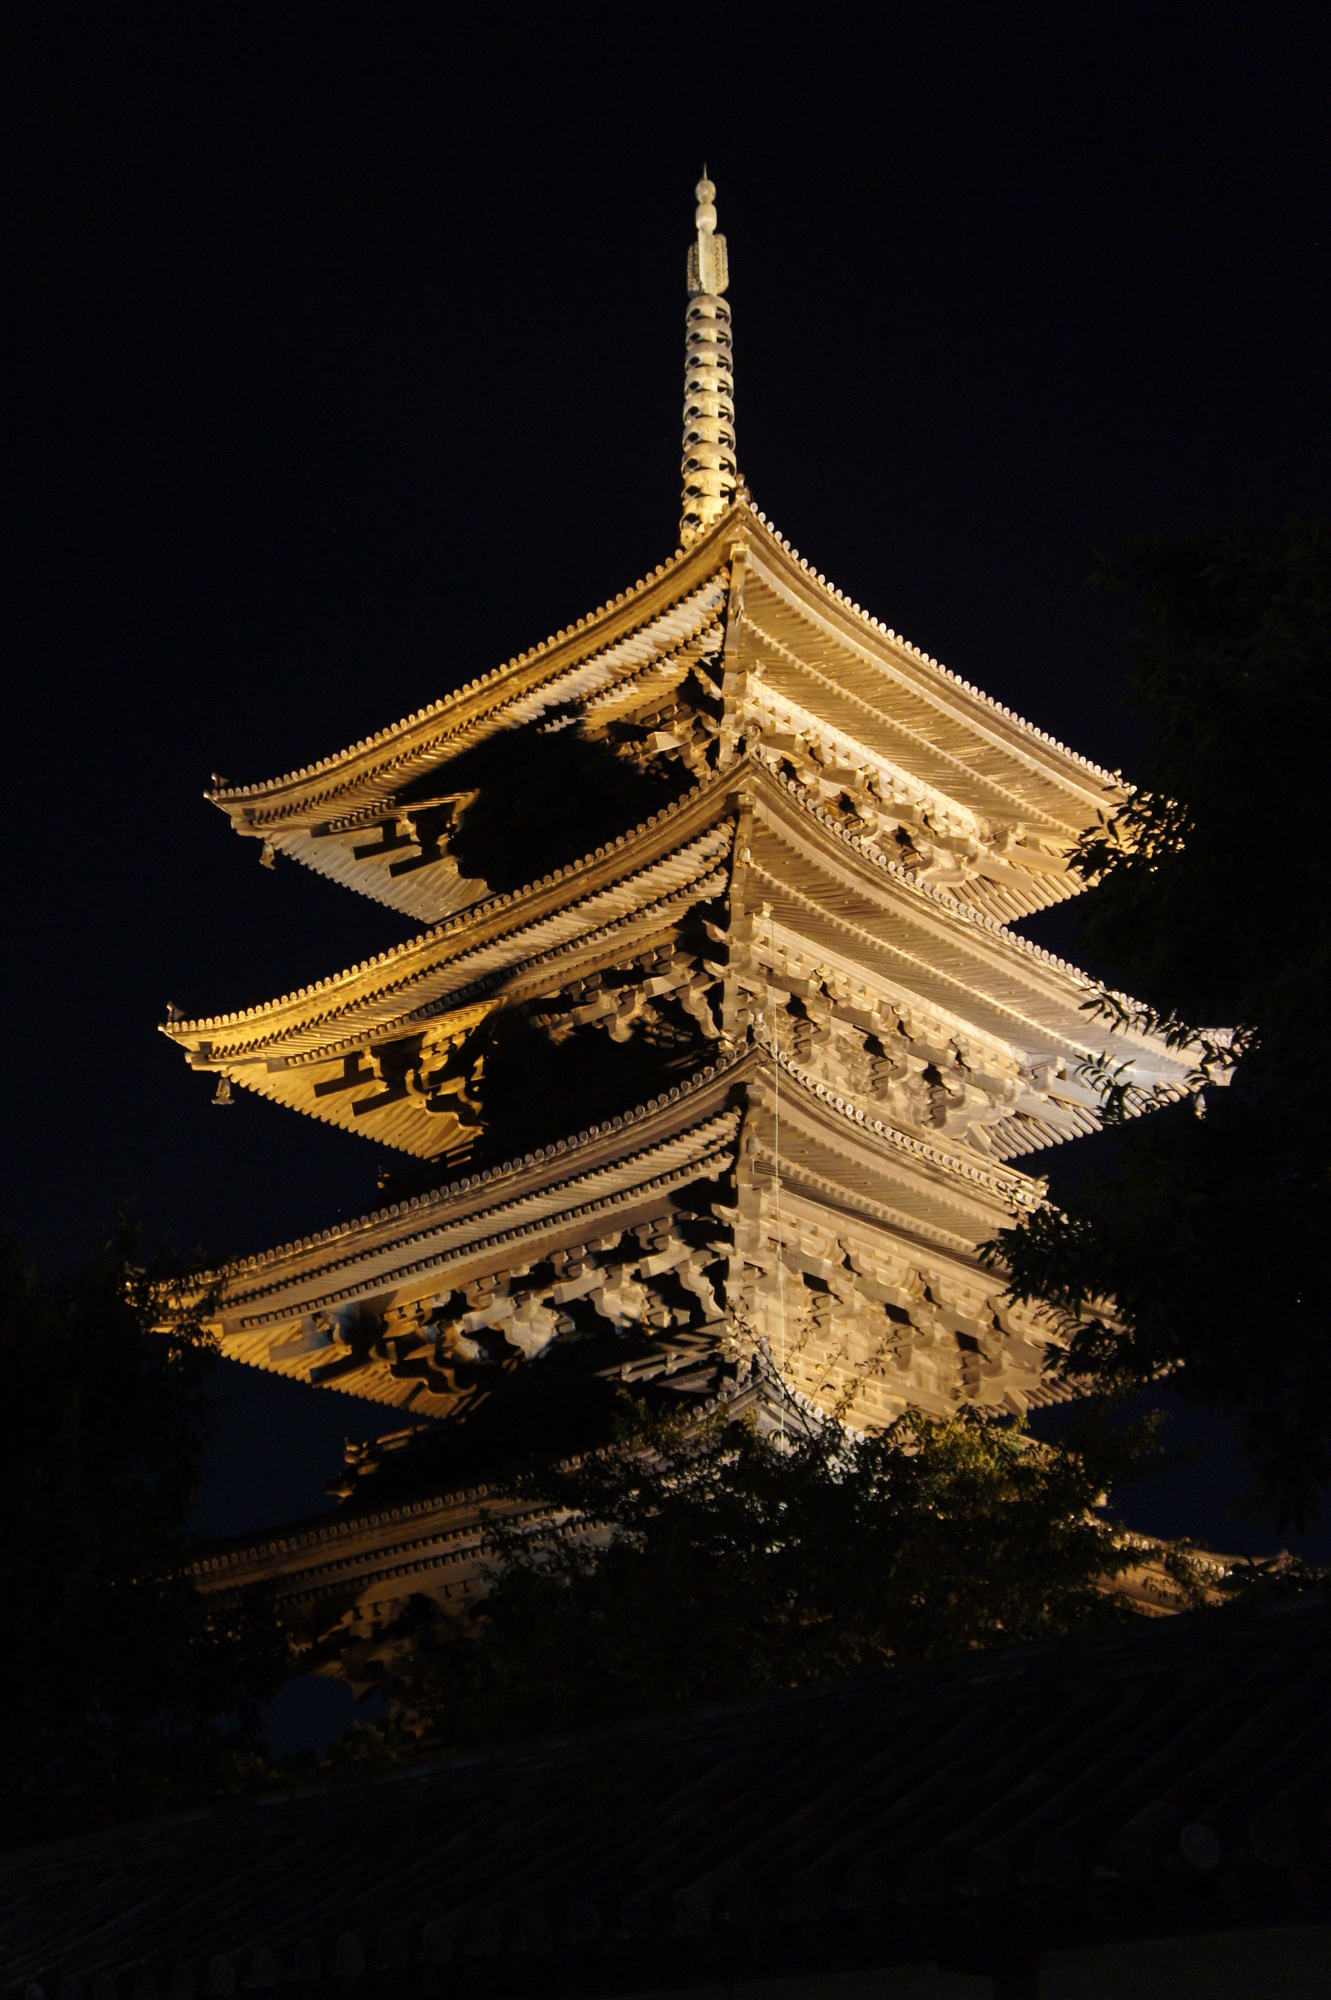 東寺五重塔の2倍以上 日本にはかつて 高さ100メートルを超える巨大仏塔があった Best Times ベストタイムズ